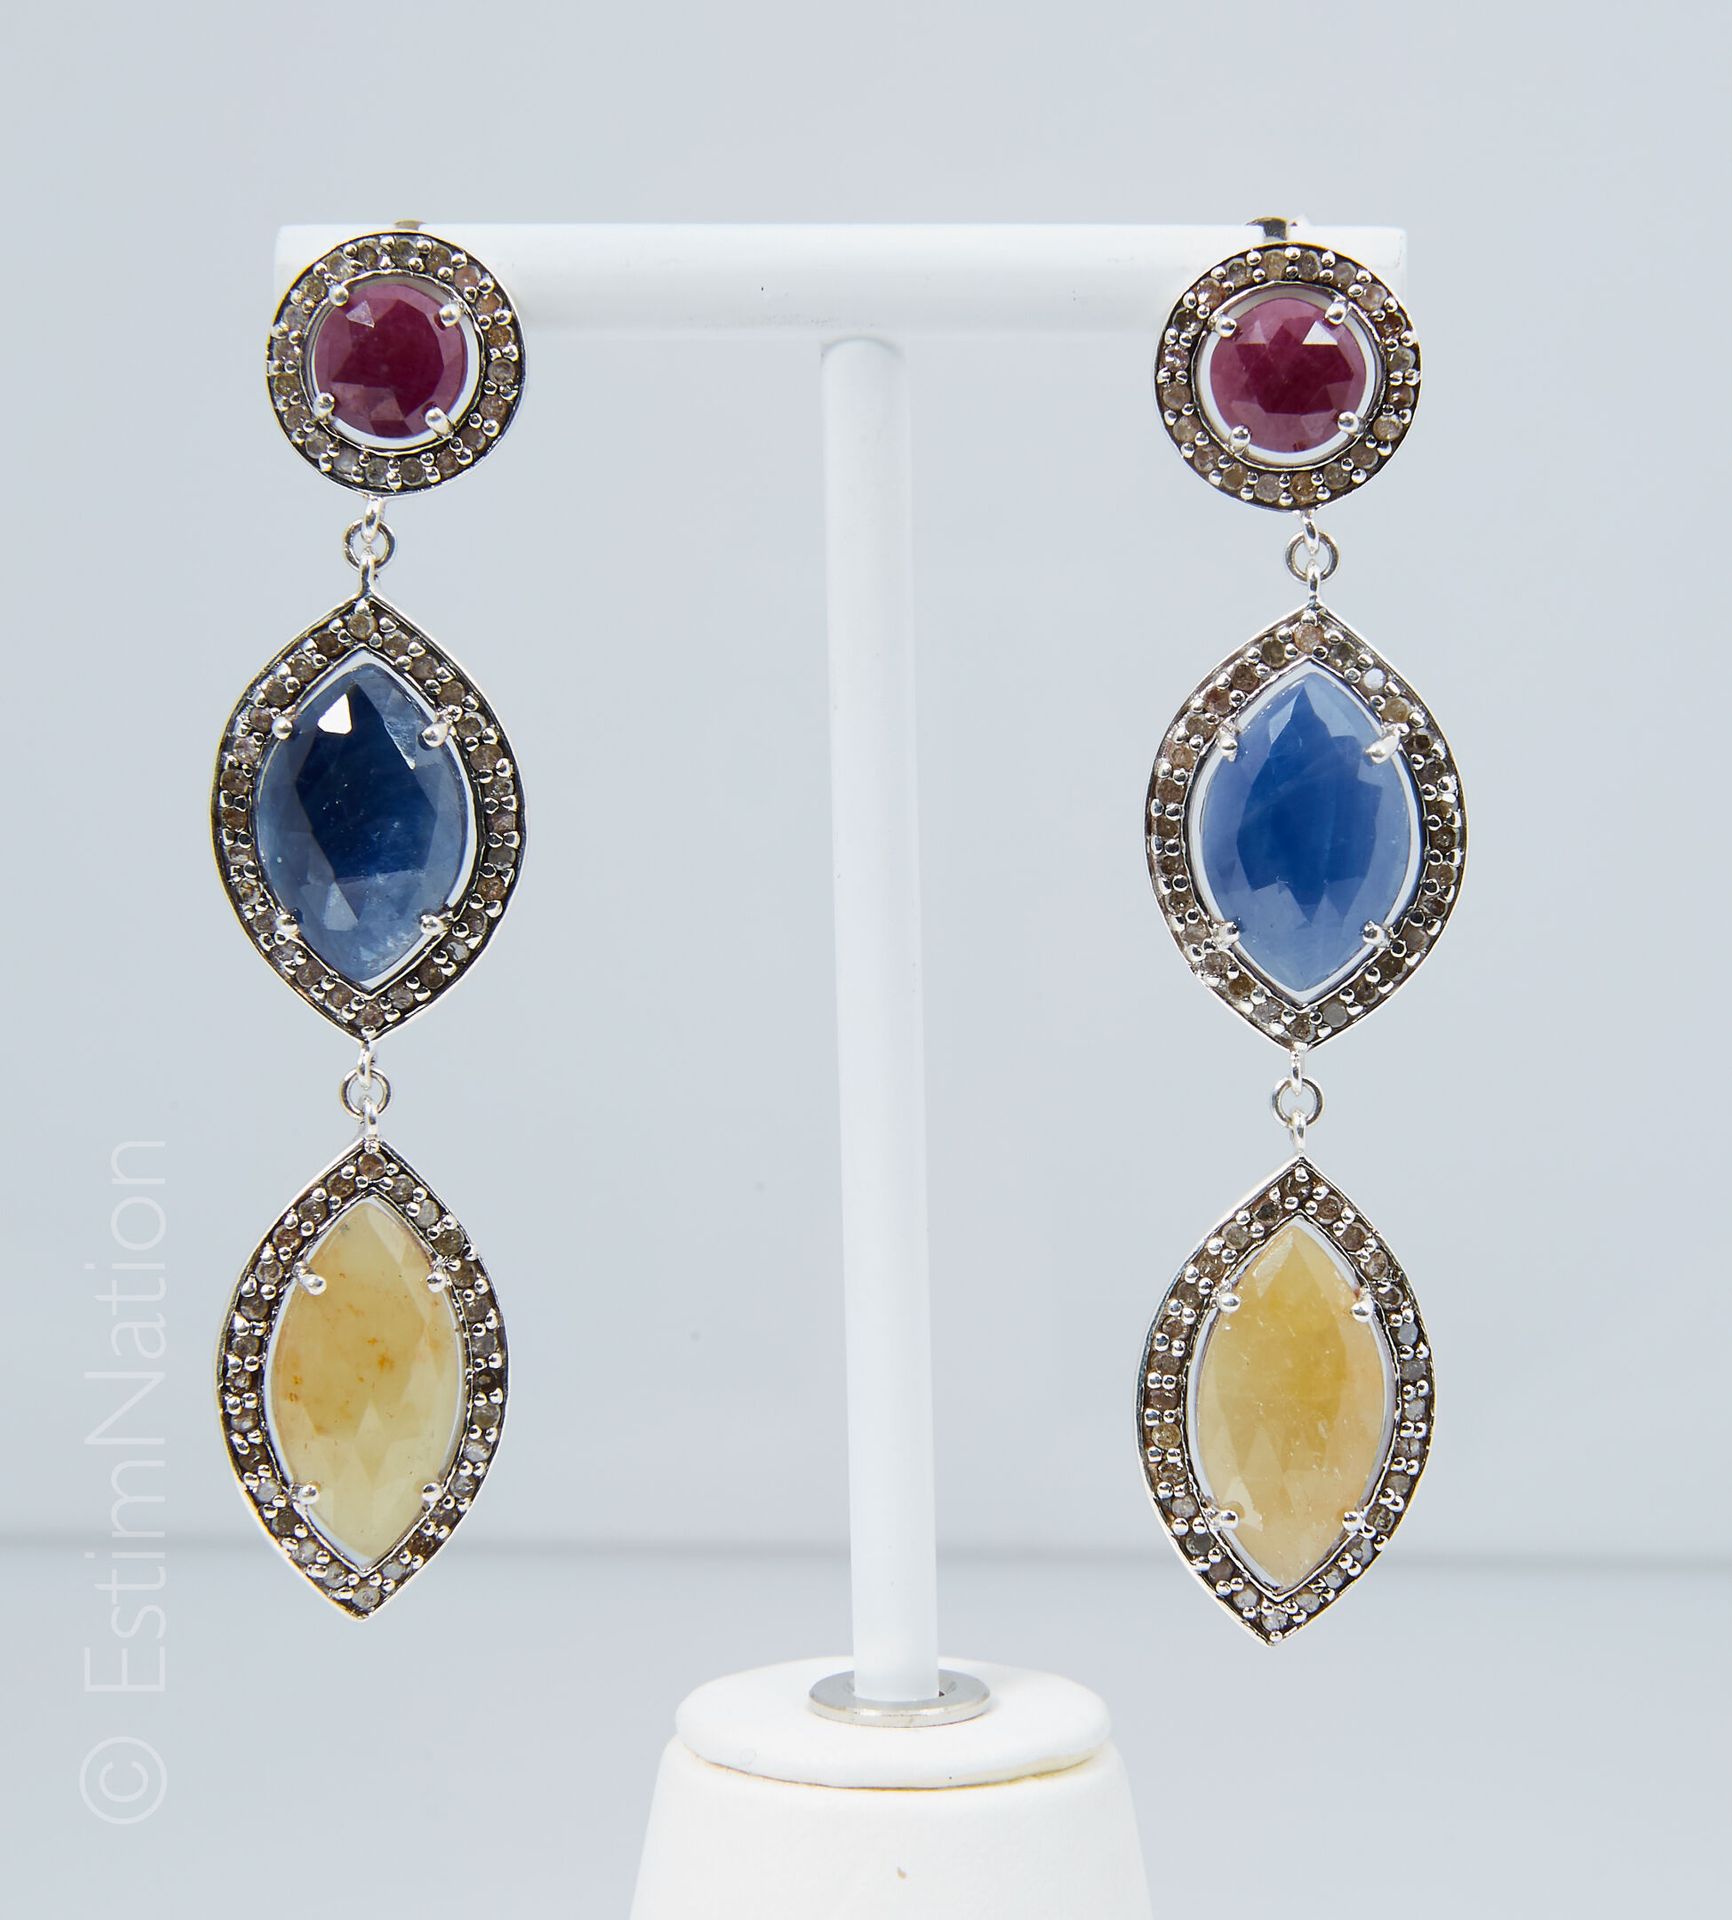 Pendants d'Oreilles 一对银质耳环（925千分之一），每只耳环都装饰有红宝石、蓝宝石和刚玉的根部，周围有小的刻面钻石，爪式镶嵌。对于穿孔的耳朵&hellip;